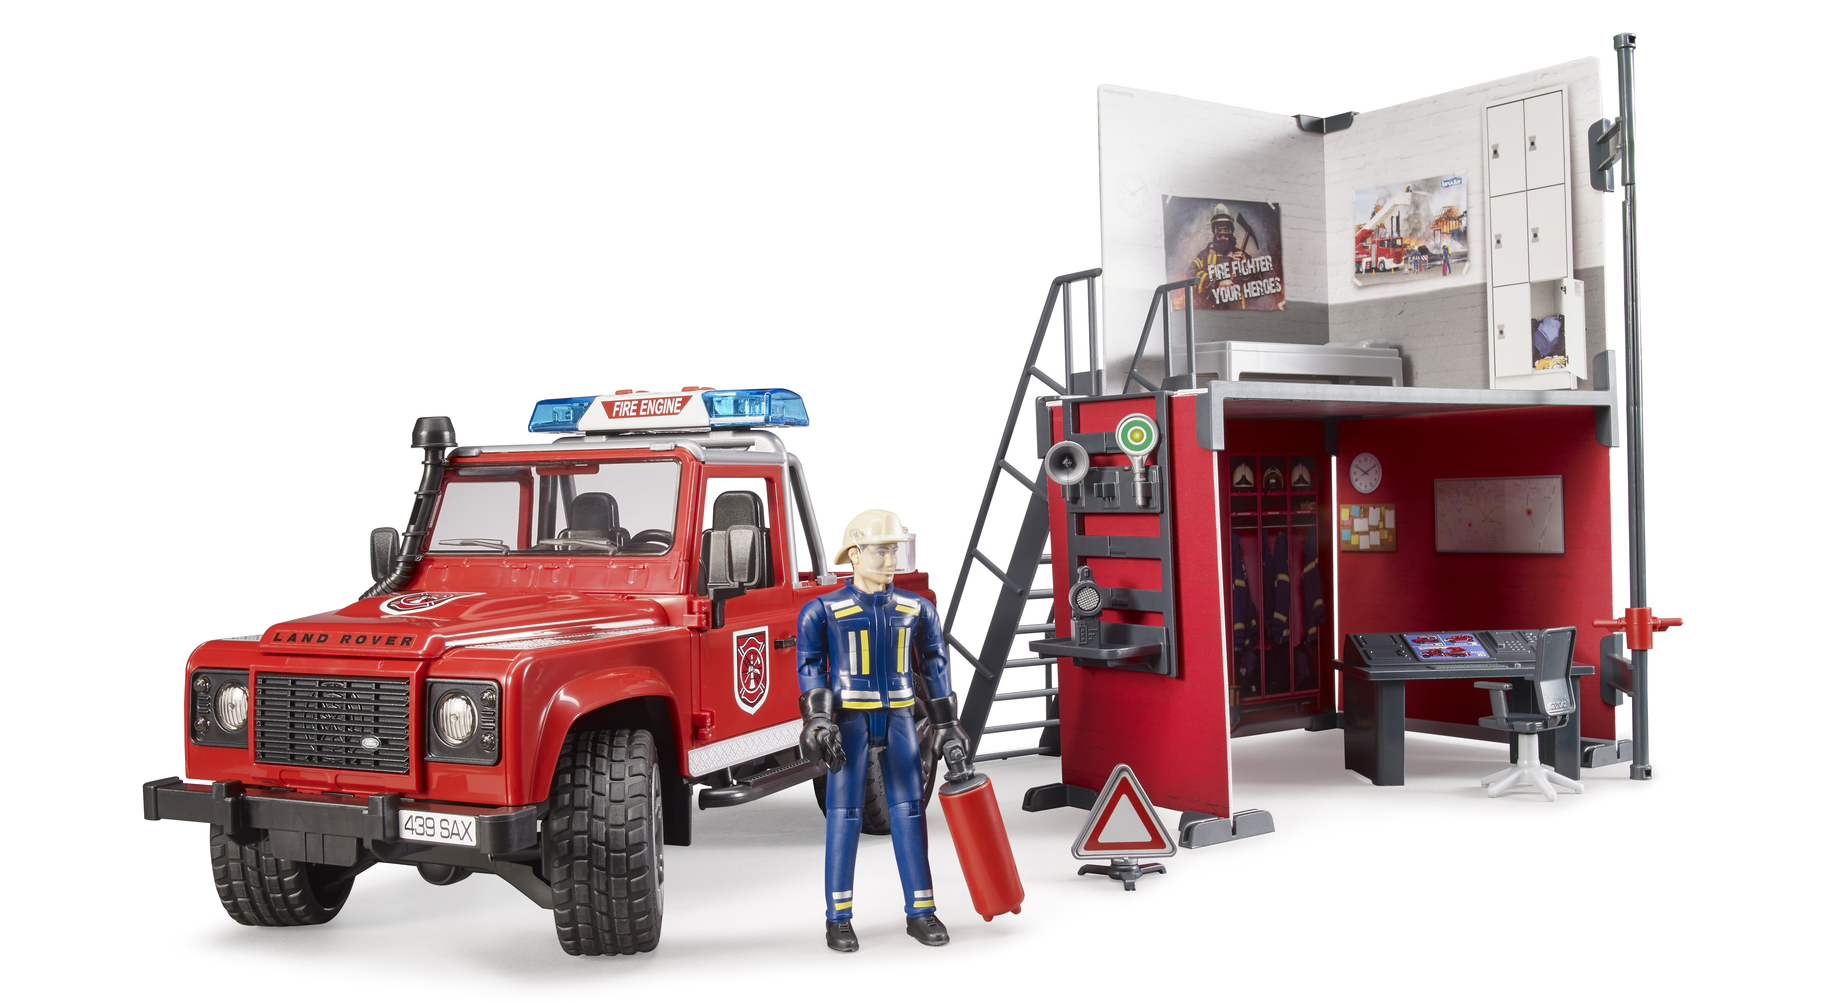 фото Bruder набор пожарная станция с джипом и фигуркой